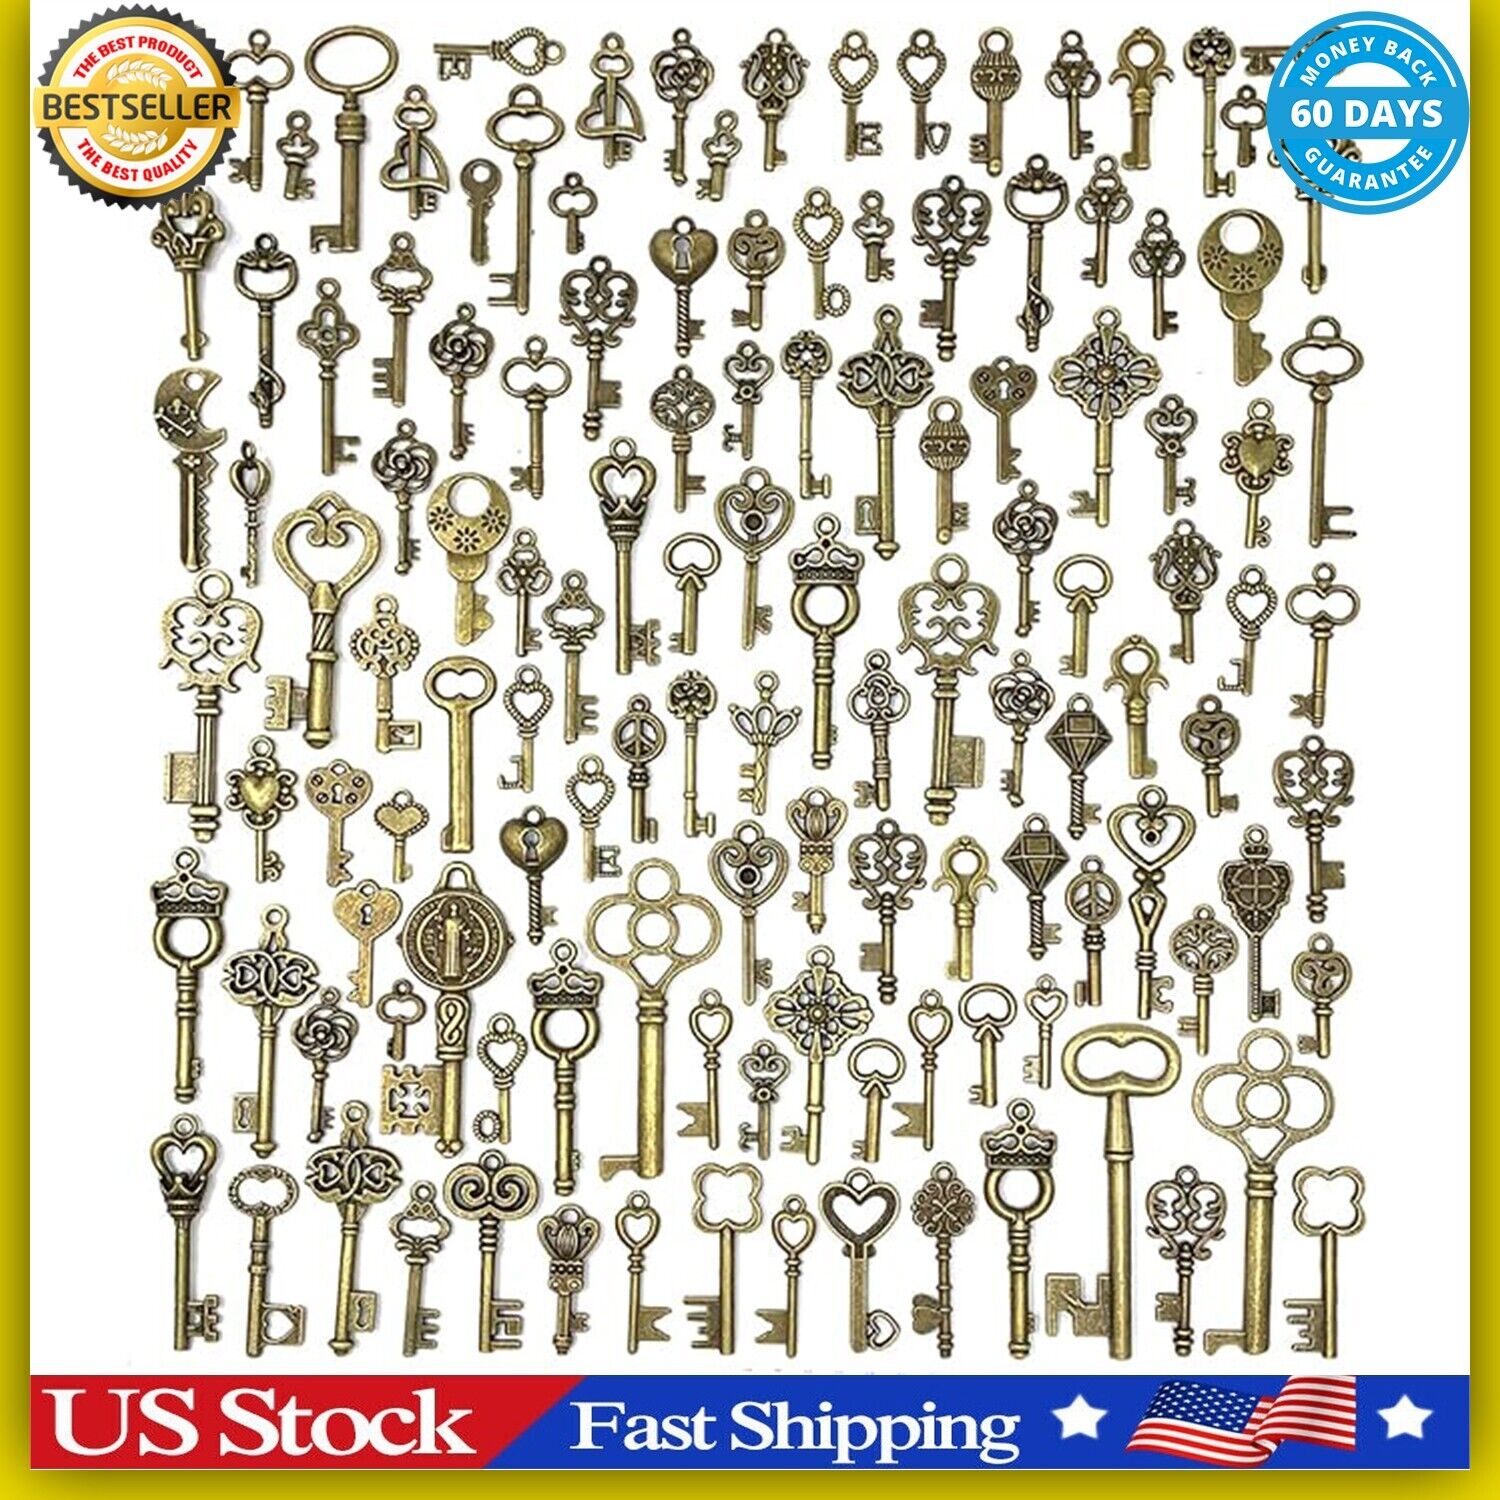 Lot Of 125 Vintage Style Antique Skeleton Furniture Cabinet Old Lock Keys Jewelr